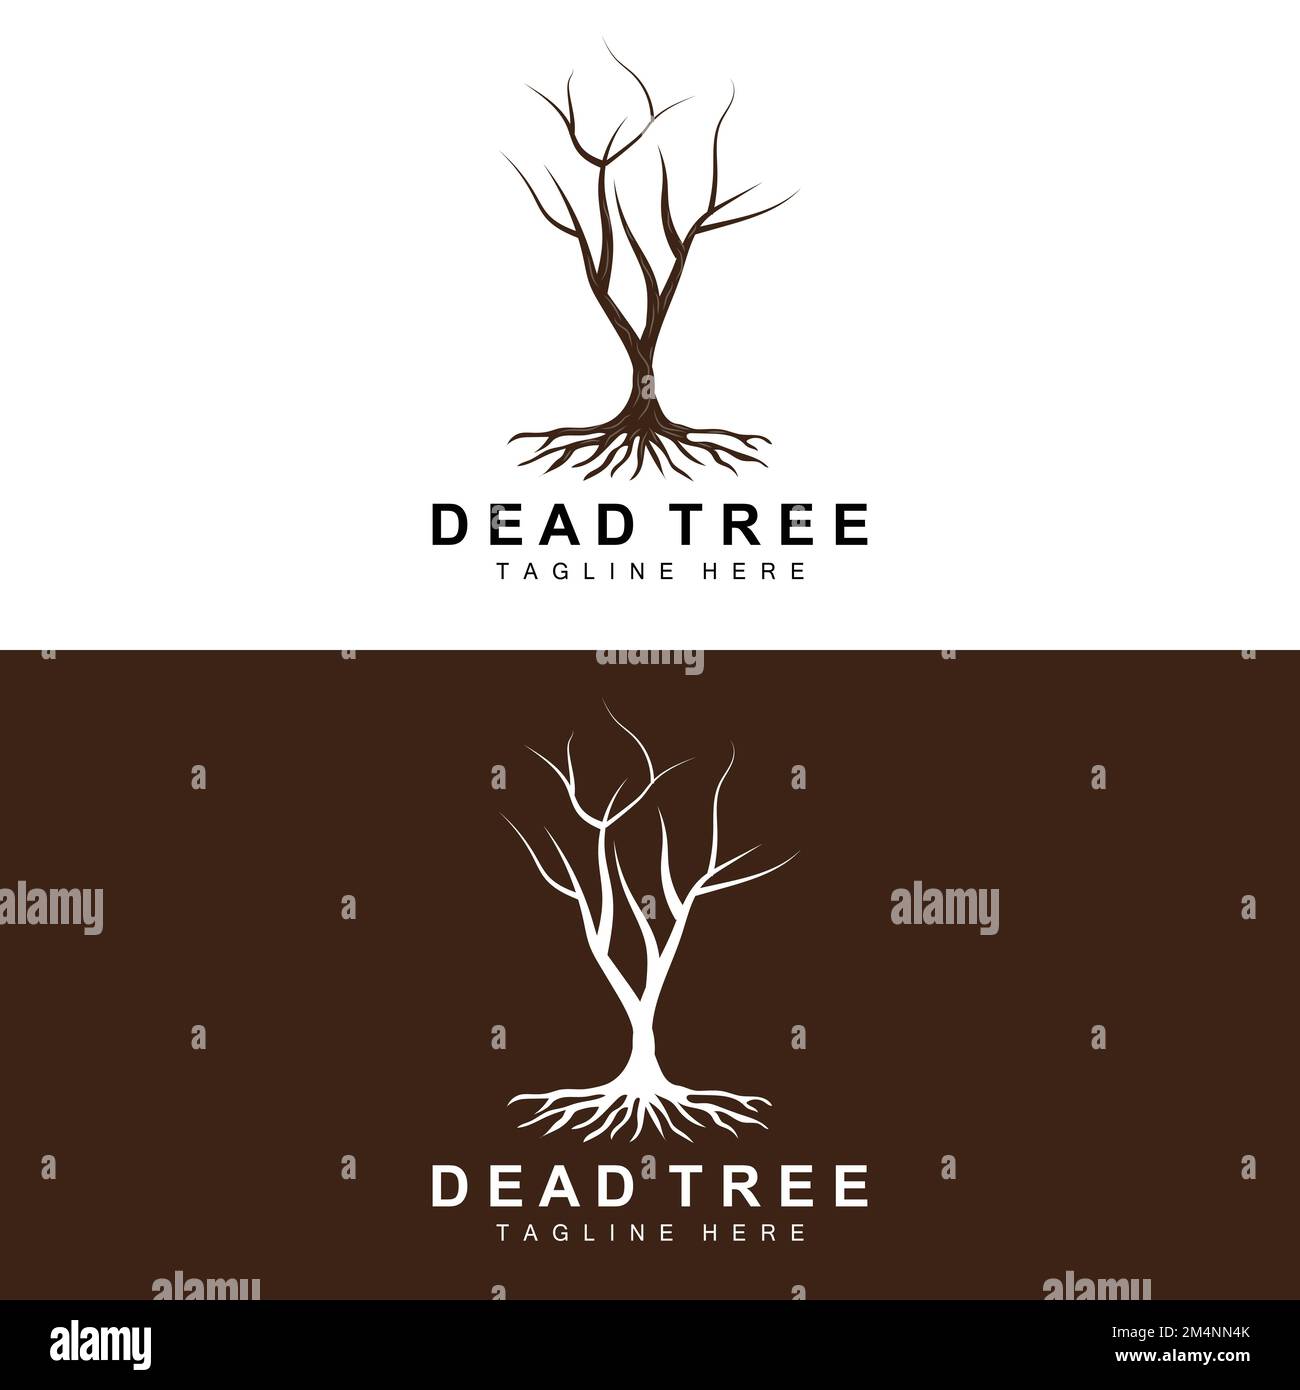 Disegno del marchio dell'albero, illustrazione dell'albero morto, taglio dell'albero selvaggio, vettore di riscaldamento globale, siccità della terra, Icone del marchio del prodotto Illustrazione Vettoriale